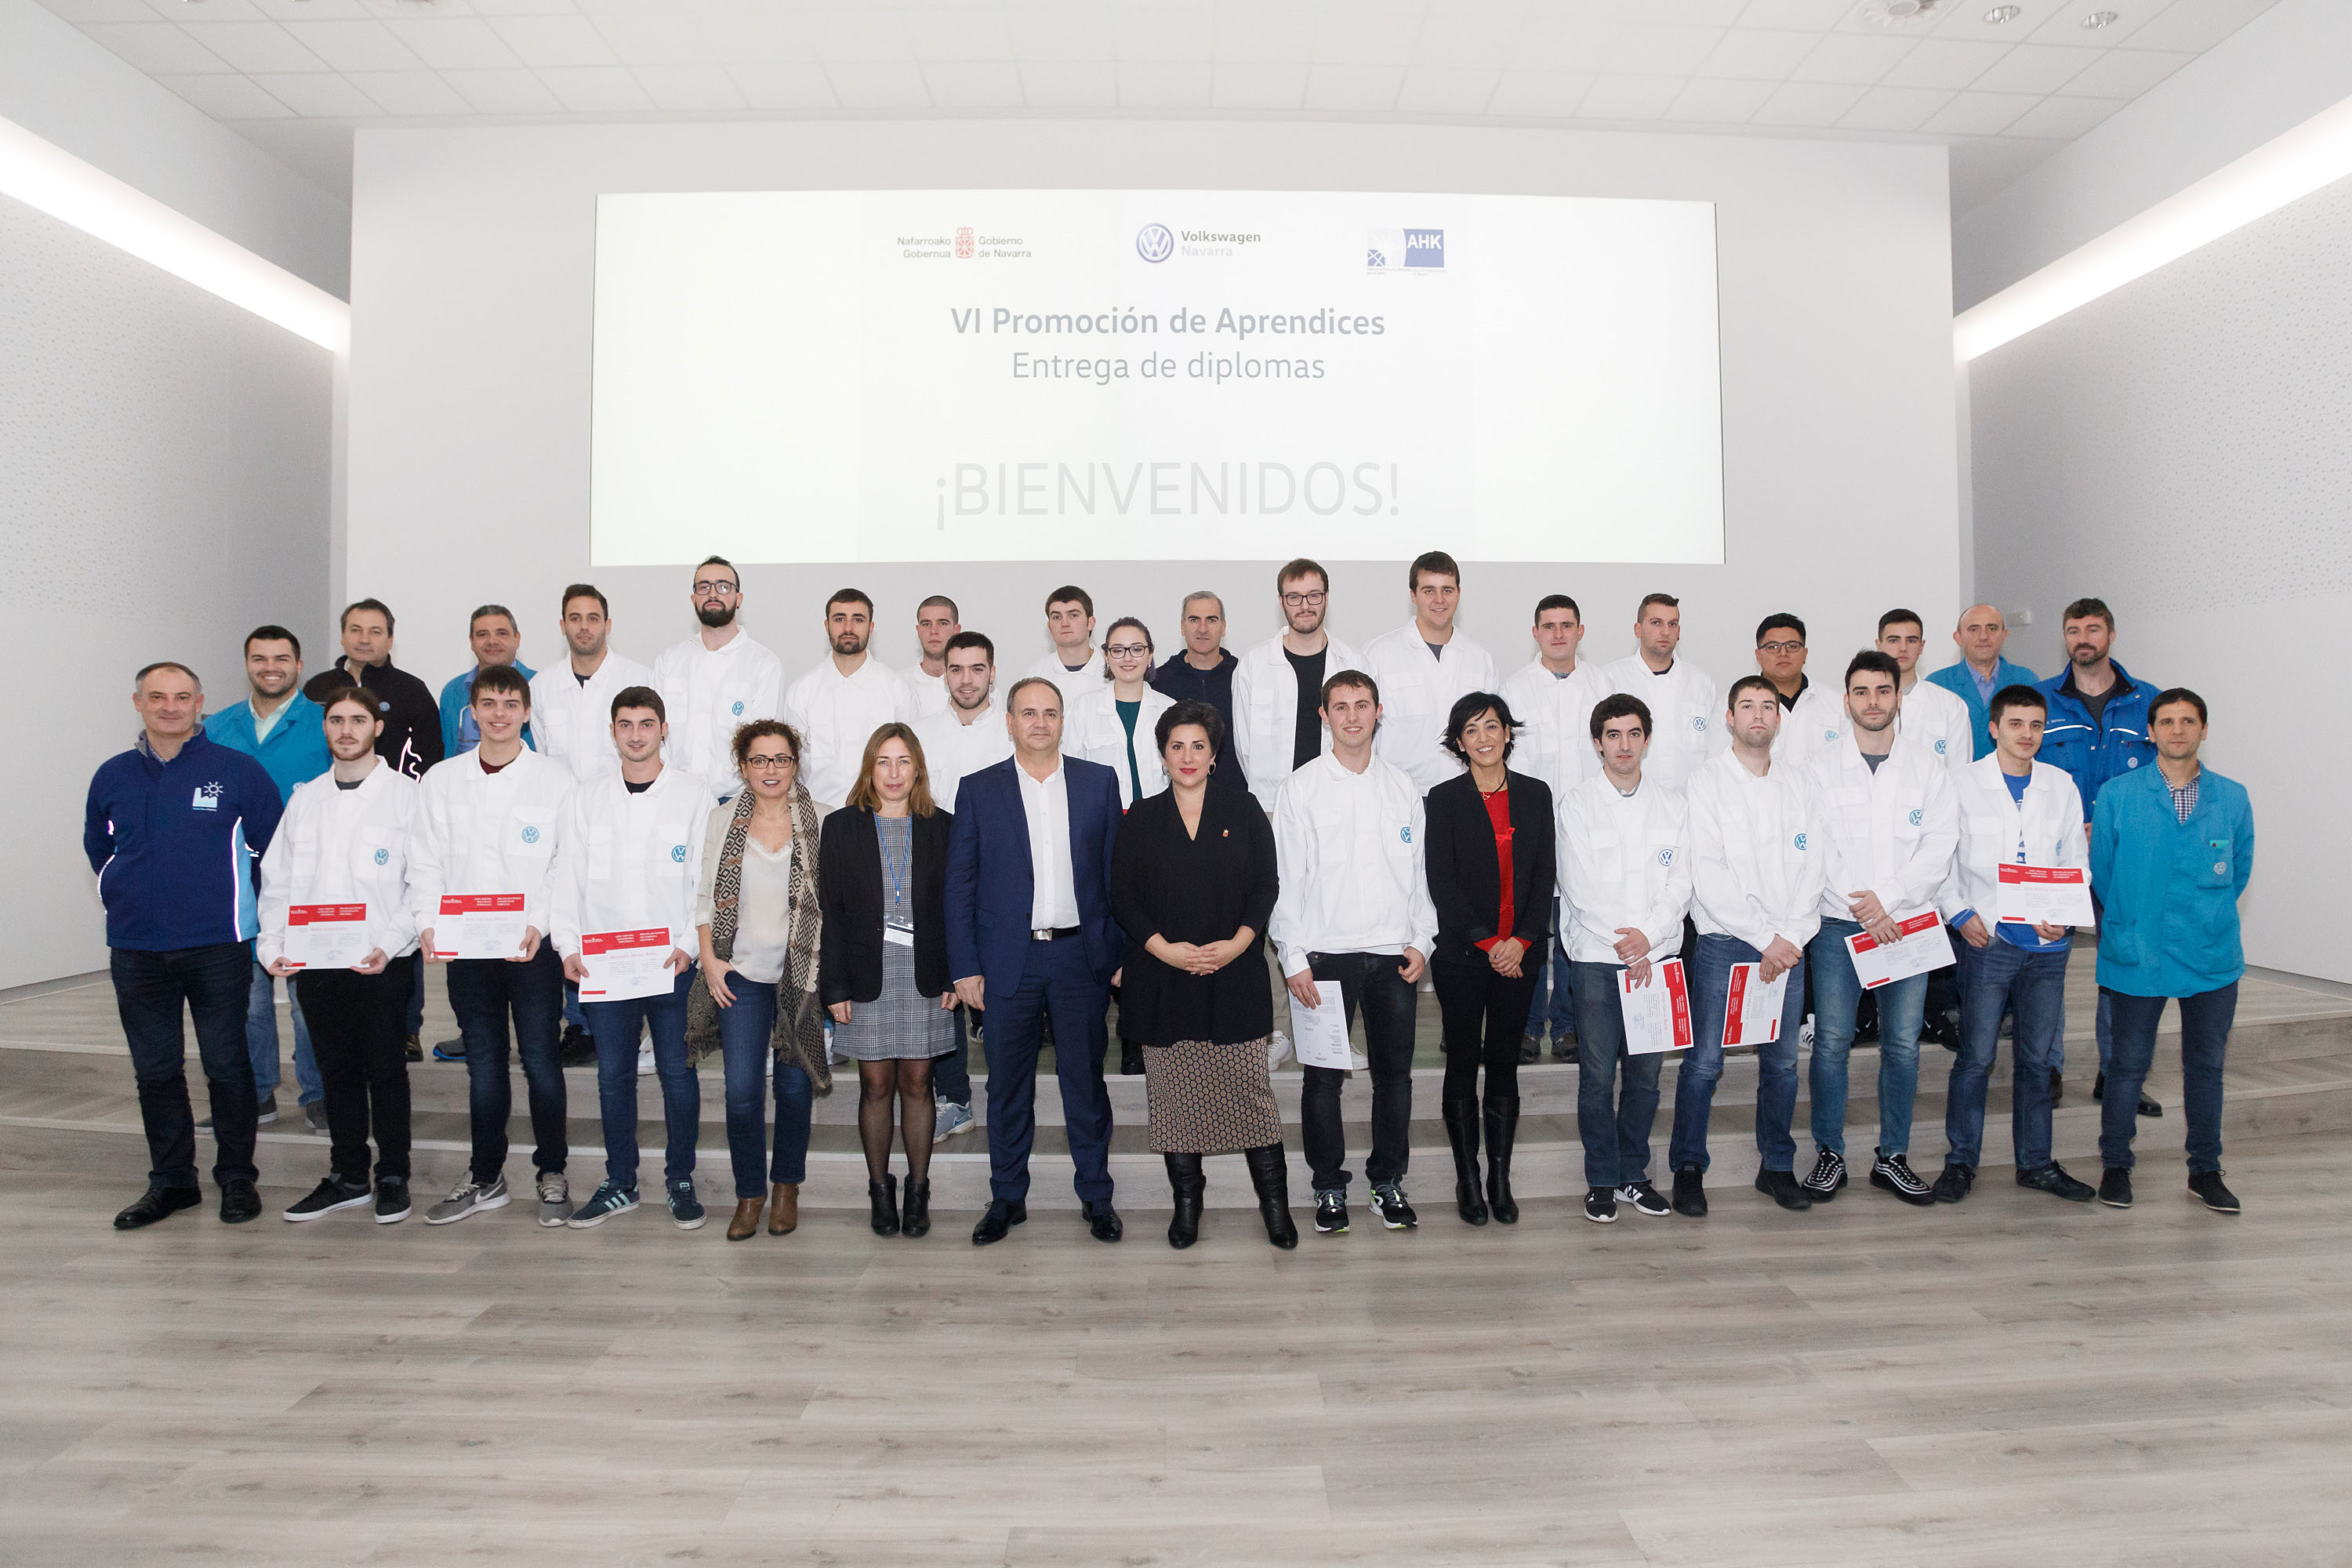 21 jóvenes reciben los diplomas de la sexta edición del Programa de Aprendices de Volkswagen Navarra